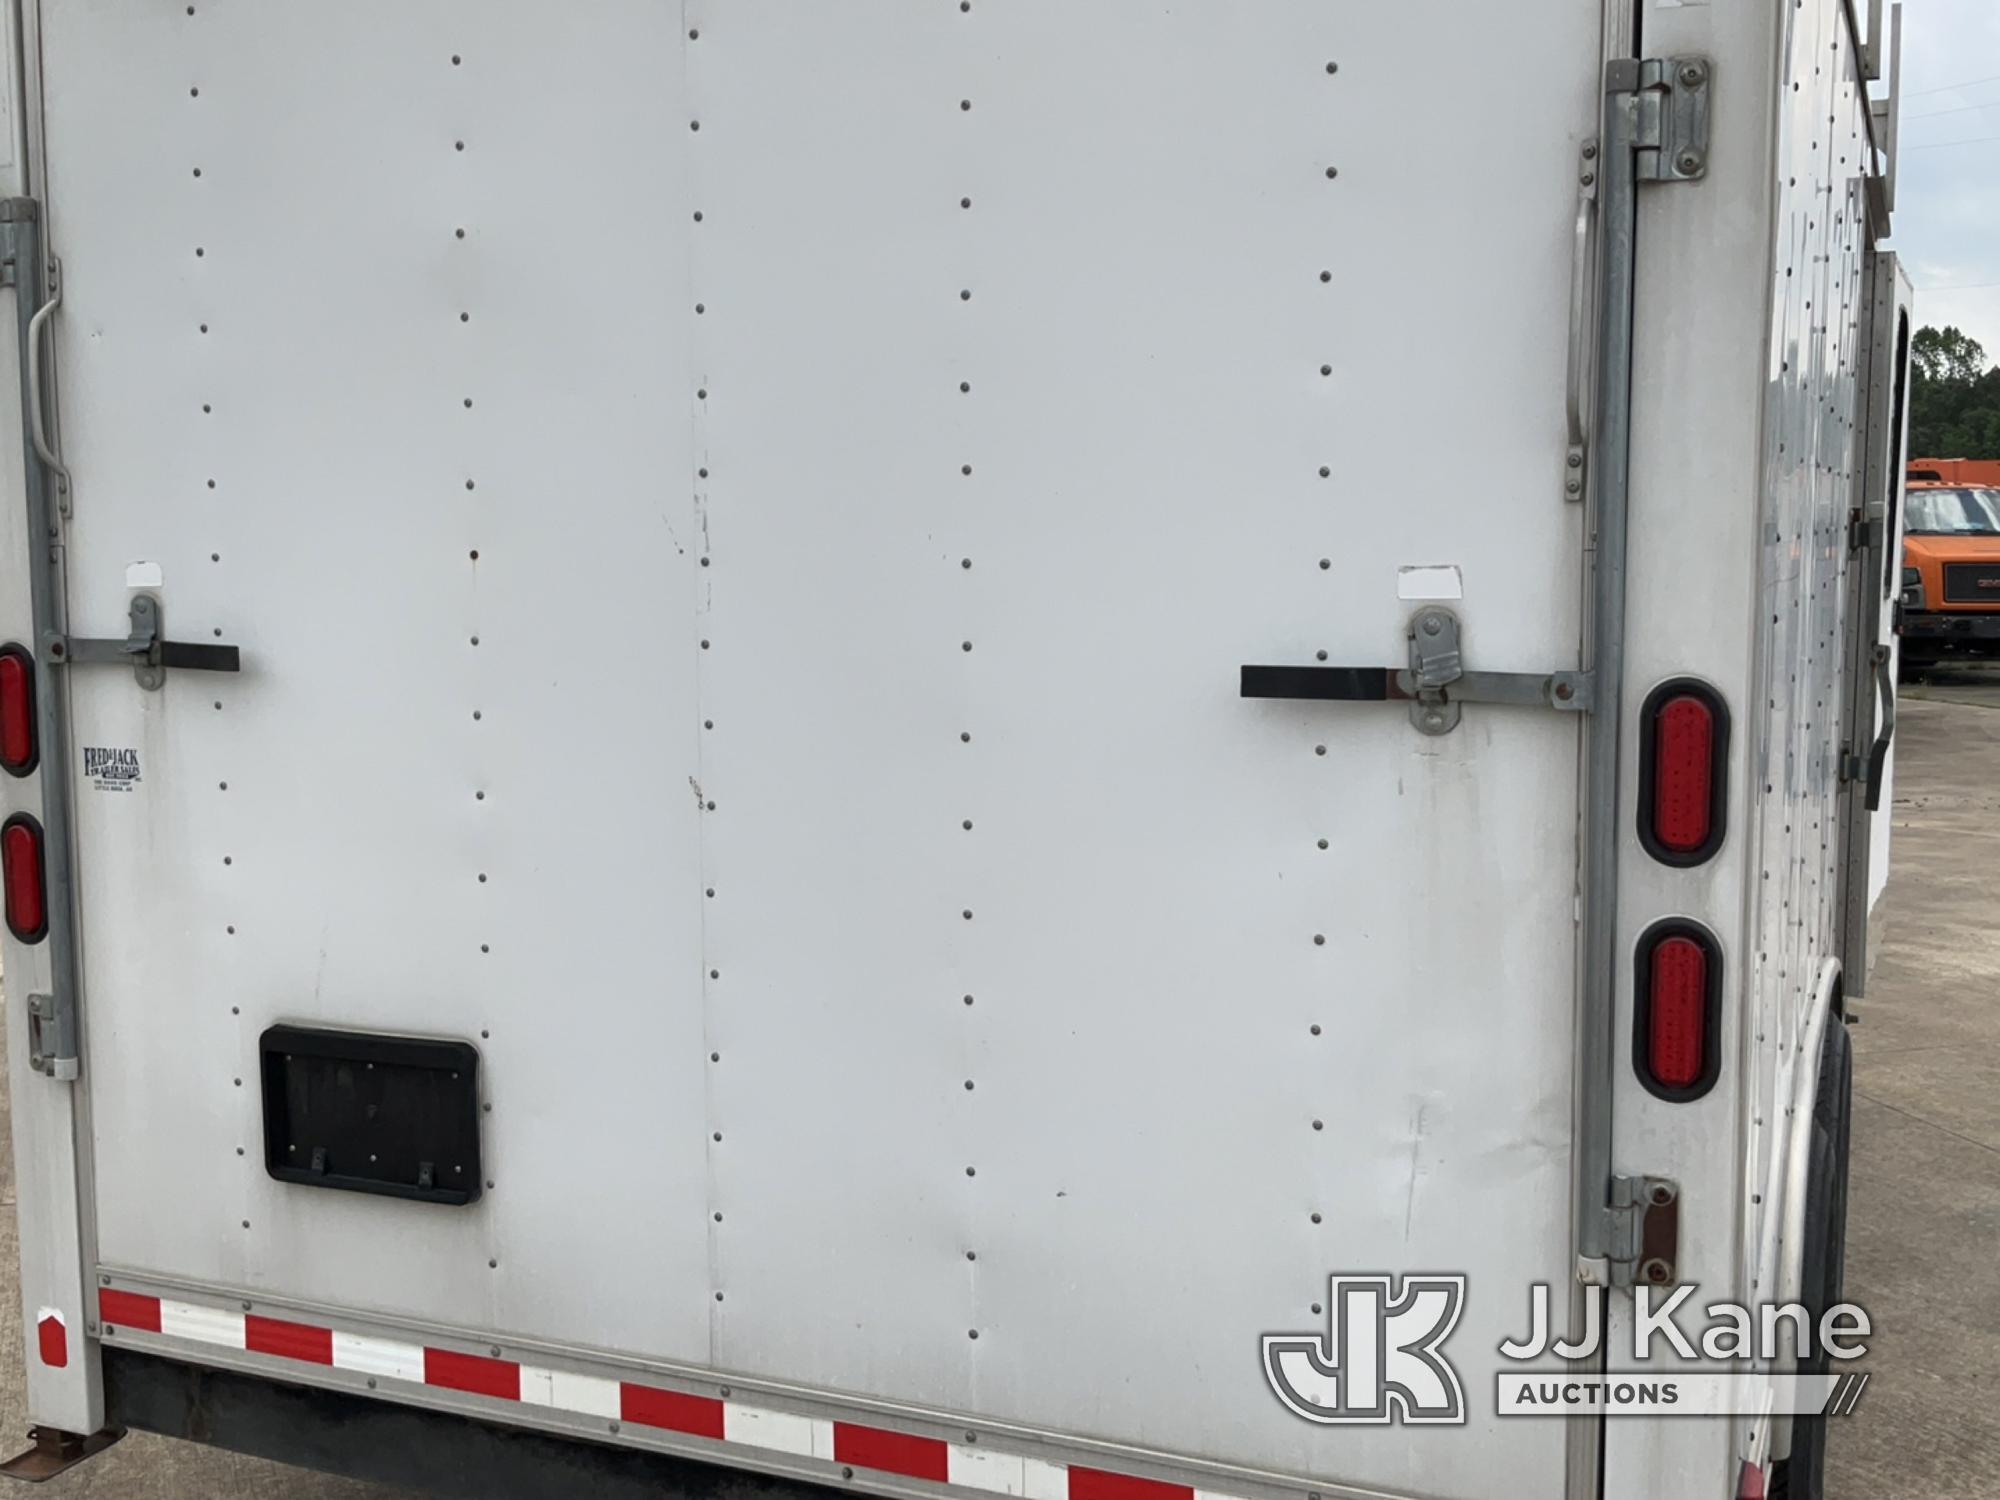 (Conway, AR) 2008 Pace Enclosed Cargo Trailer 7-way trailer RV plug.